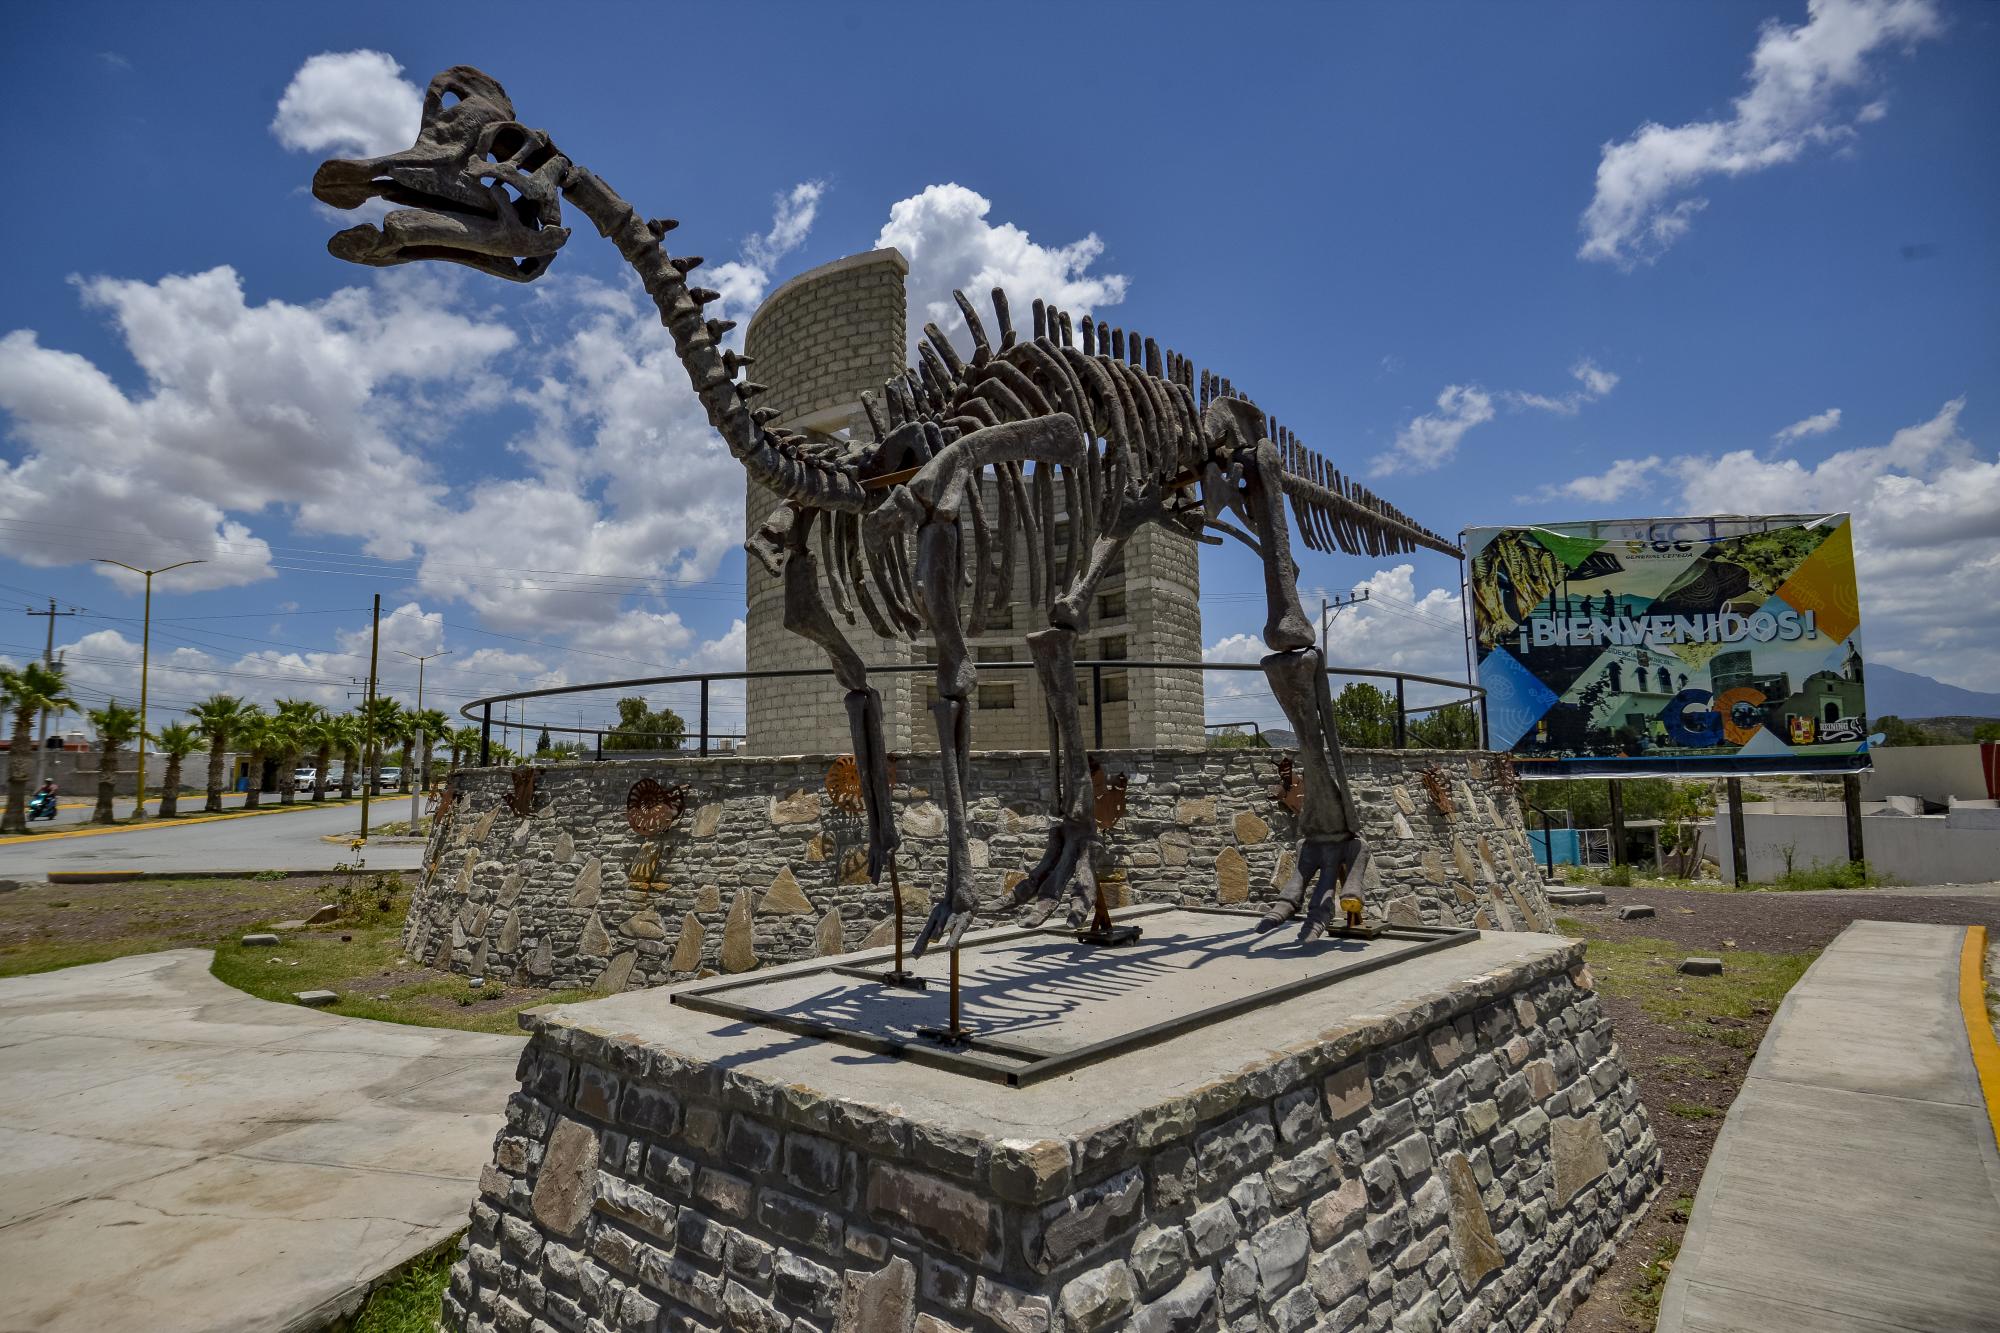 $!El esqueleto de un enorme dinosaurio te da la bienvenida al poblado.